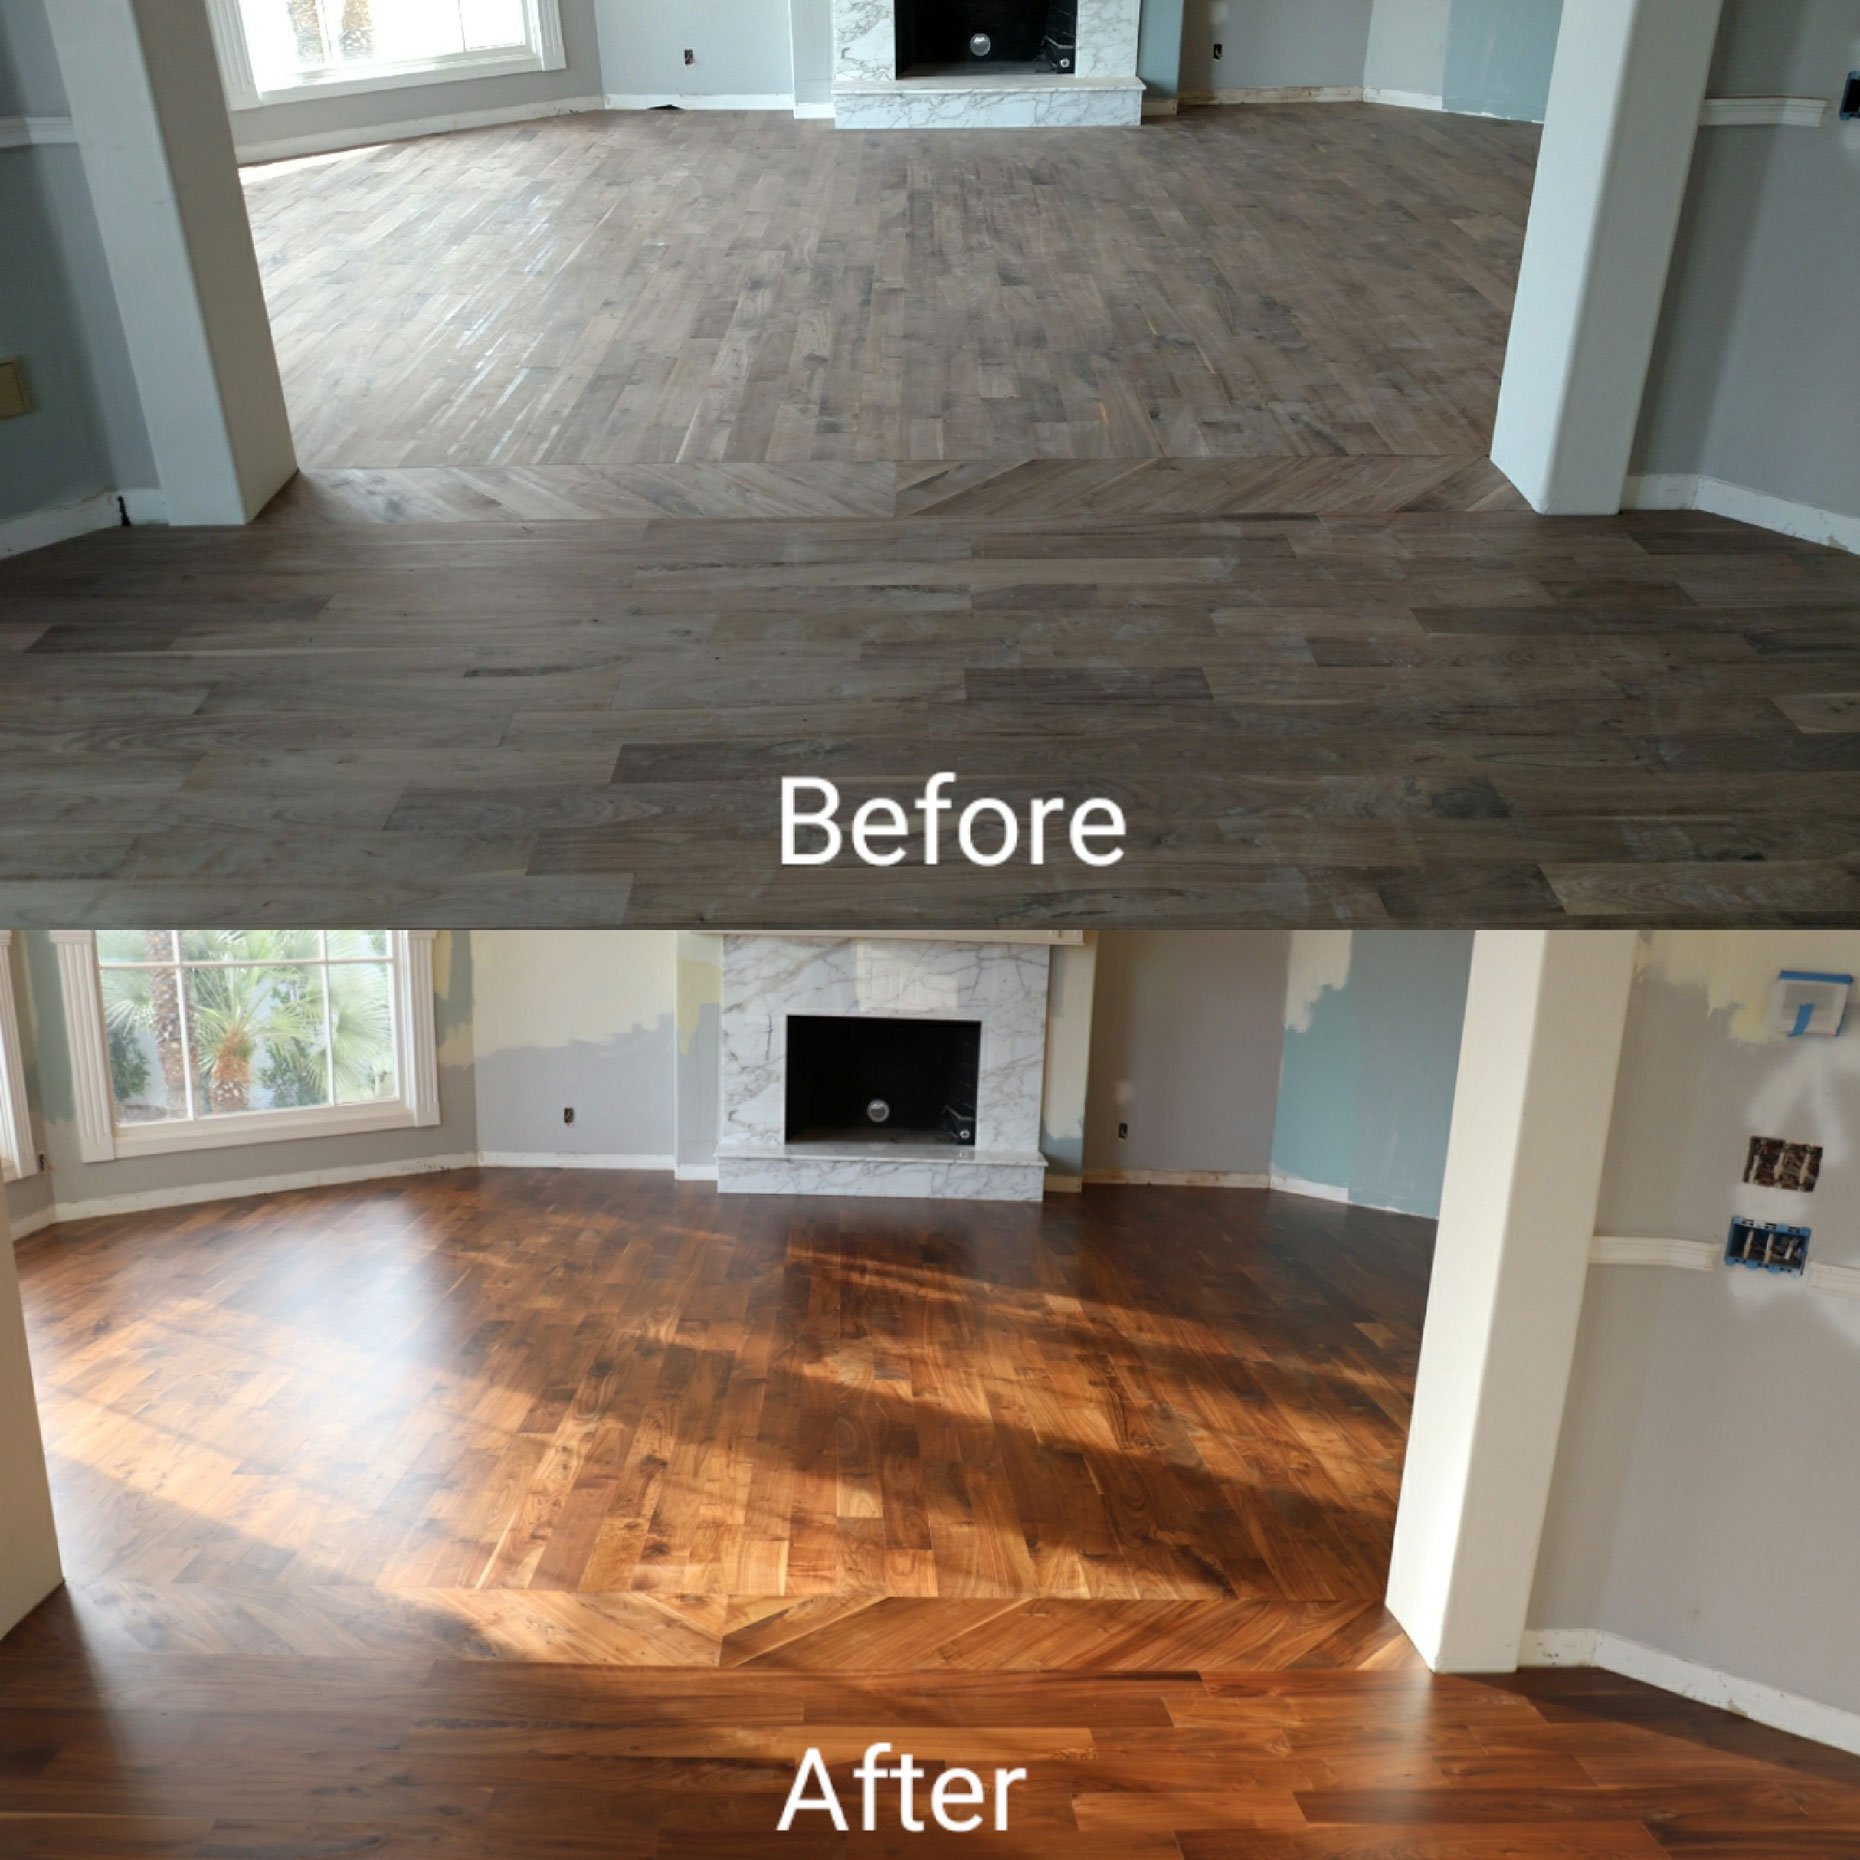 Wood Floor Refinishing In Gilbert, Screen And Recoat Hardwood Floors Cost